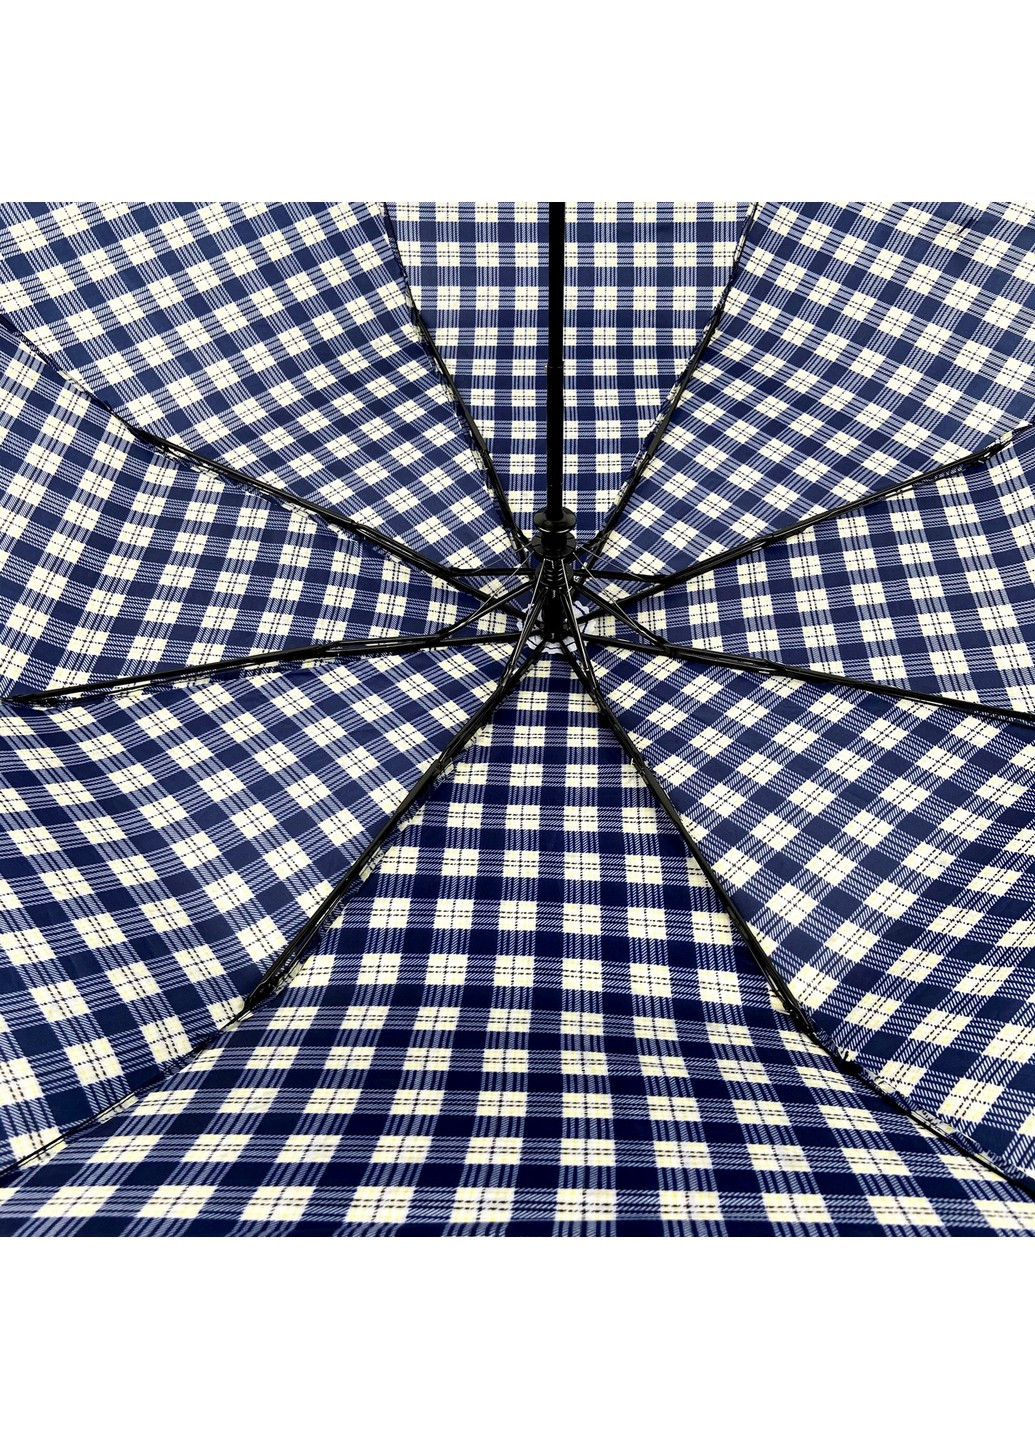 Зонт полуавтомат женский 98 см SL (258676236)